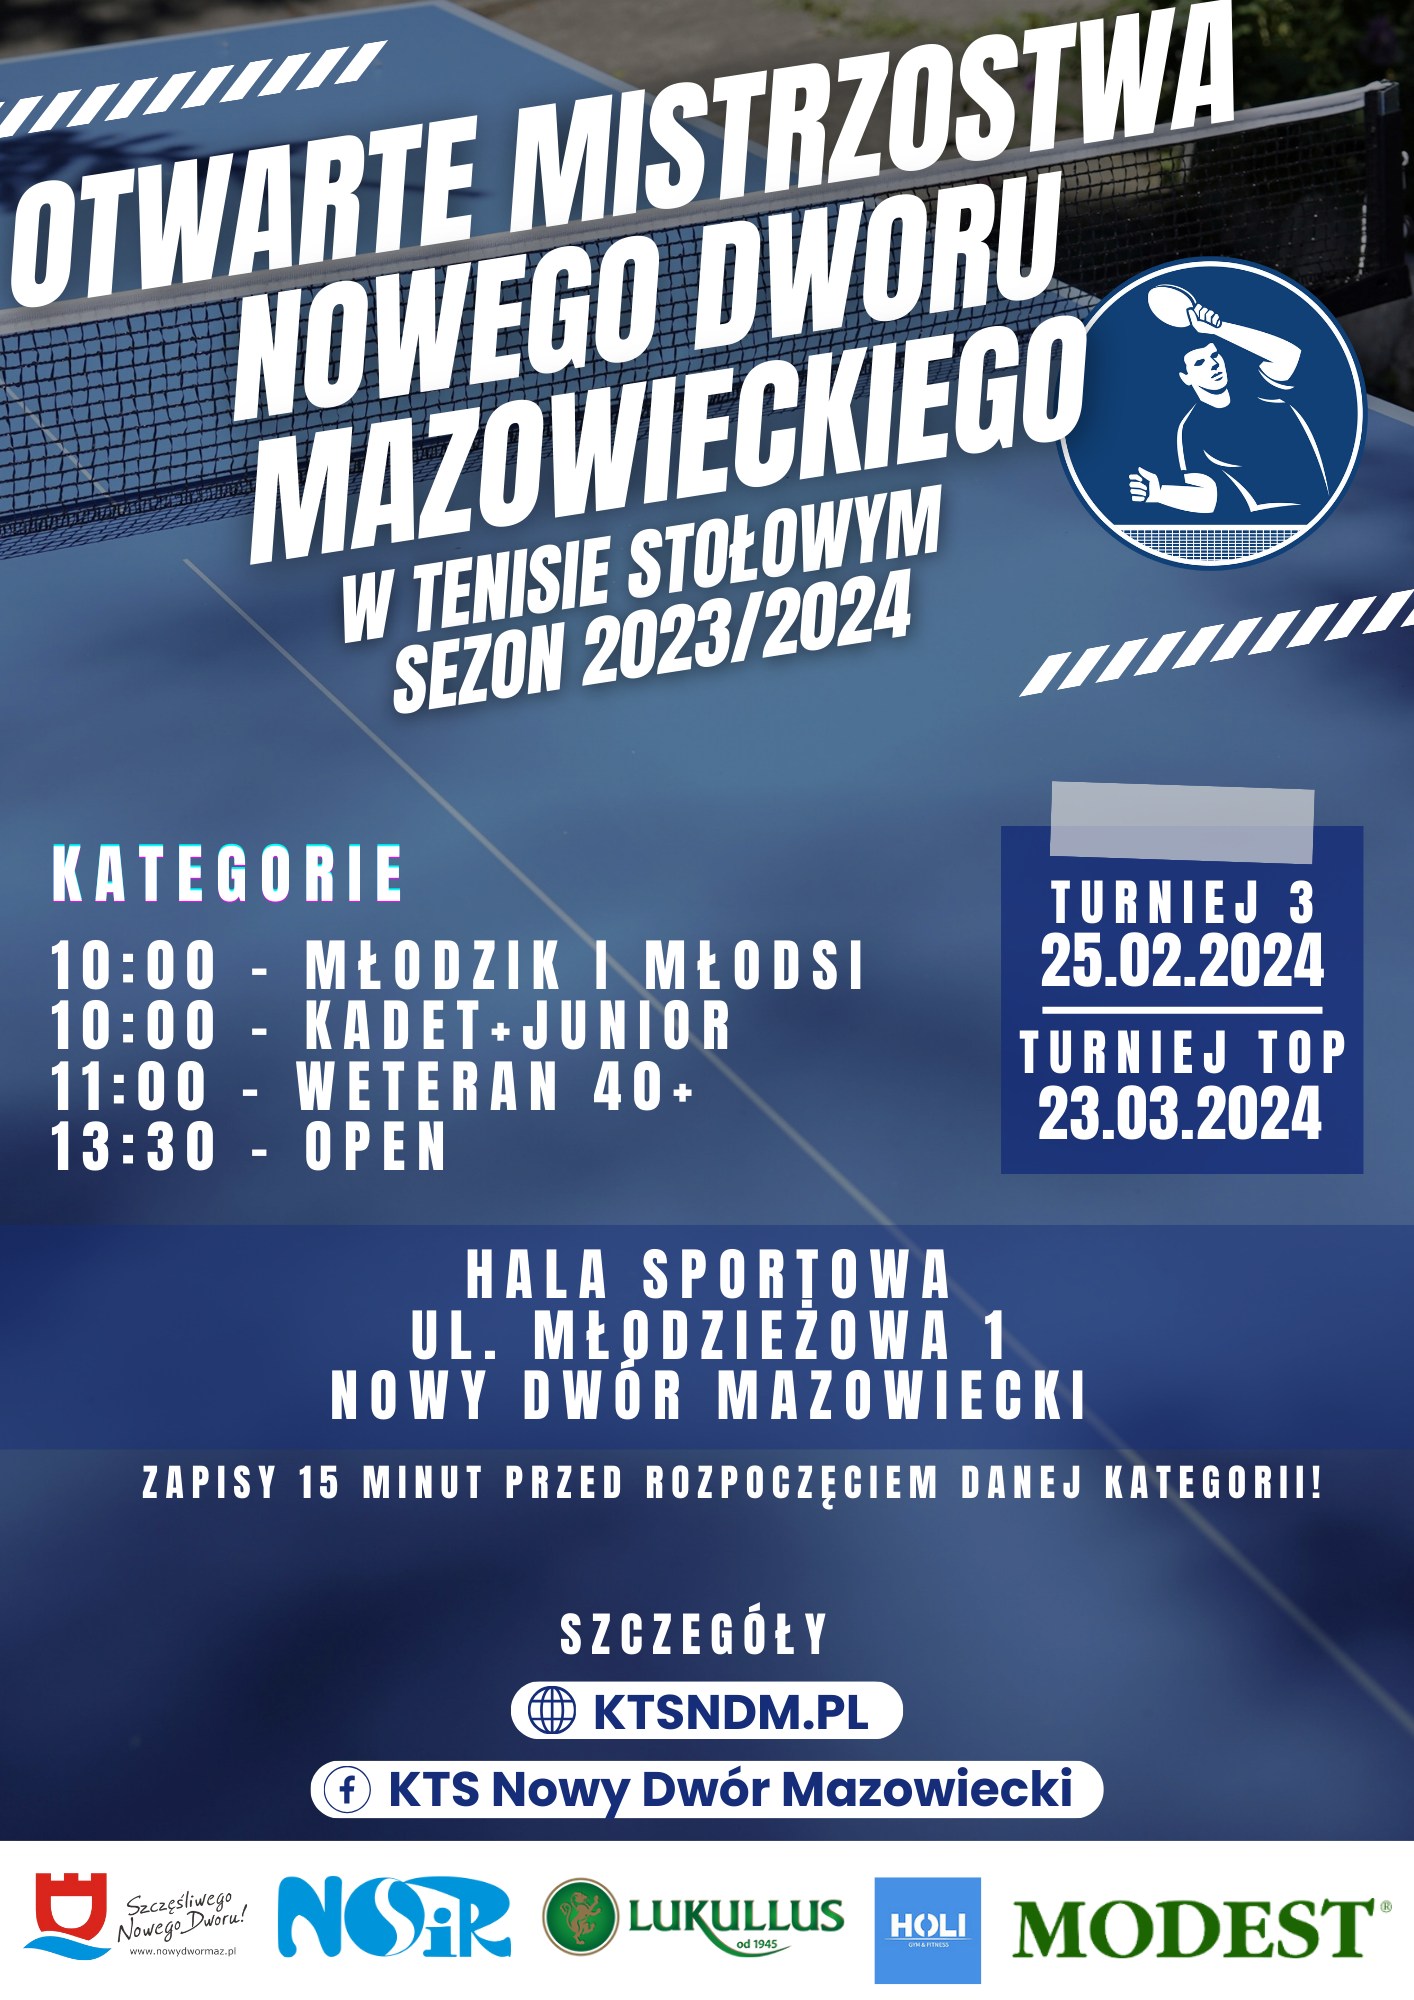 Plakat turnieju Otwarte Mistrzostwa Nowego Dworu Mazowieckiego w tenisie stołowym w sezonie 2023/2024 - 25.02.2024, turniej 3